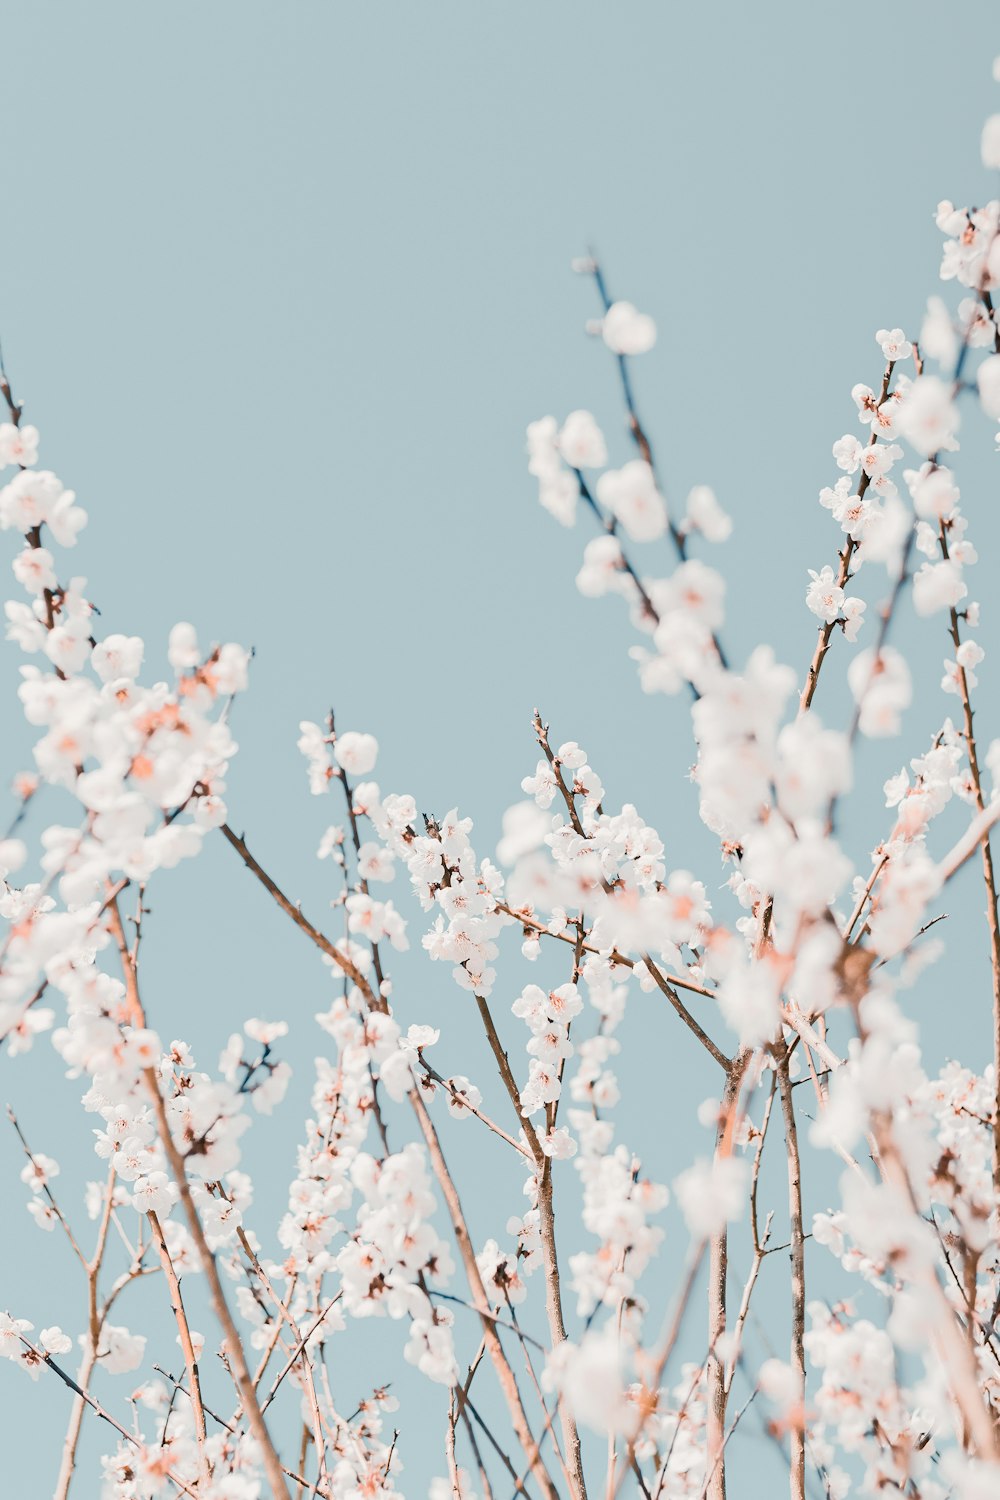 Flor de cerezo blanco en fotografía de primer plano